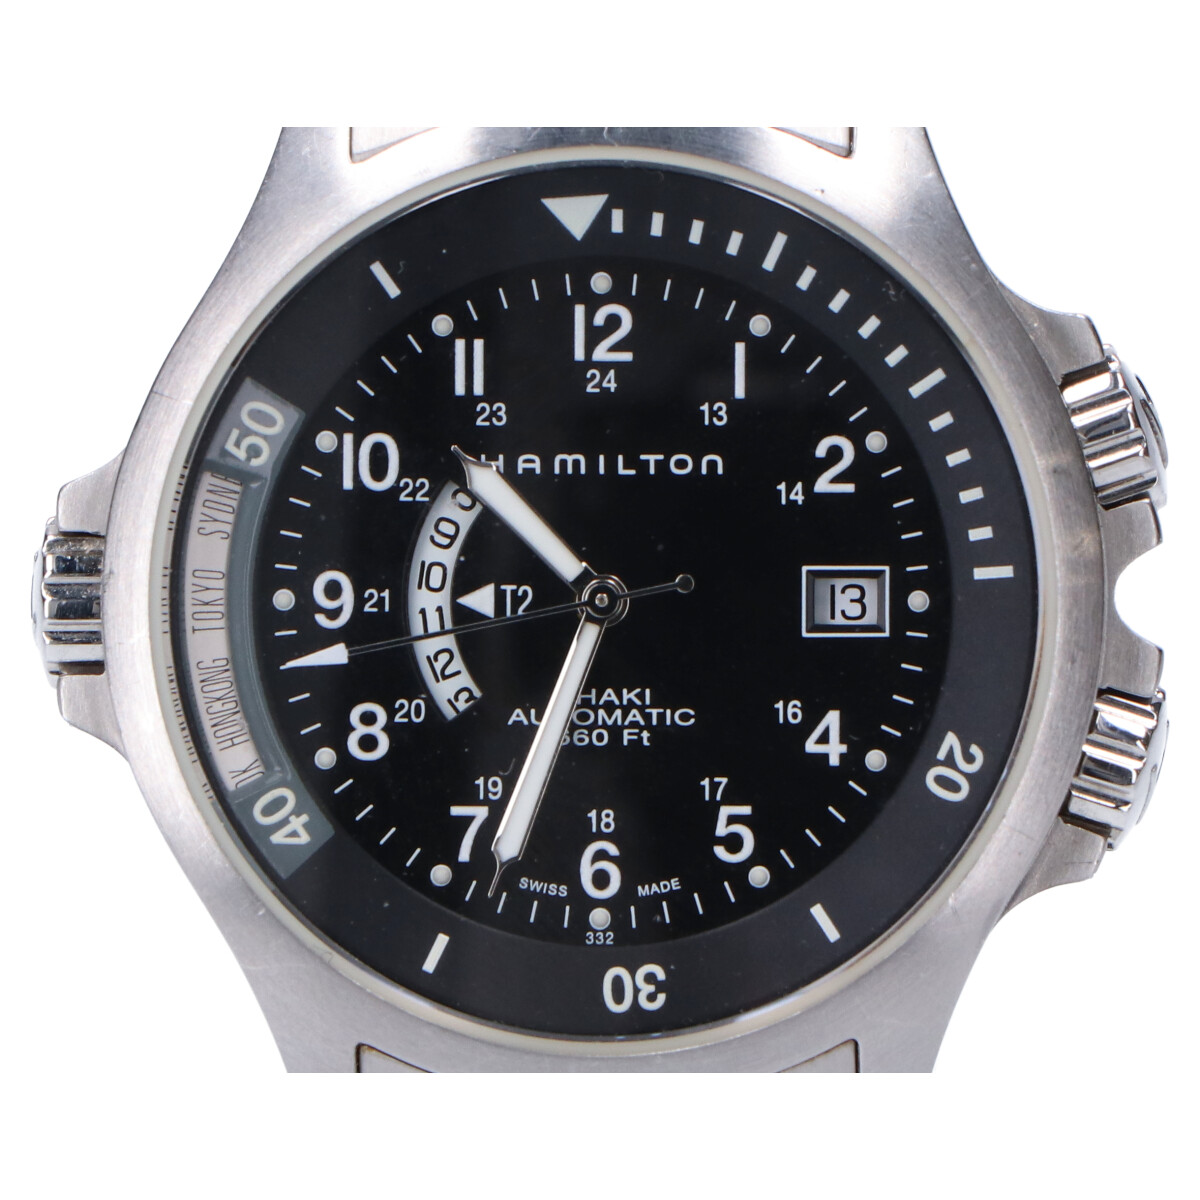 ハミルトンのH776151 660Ft カーキネイビー GMT バックスケルトン 自動巻き 腕時計の買取実績です。